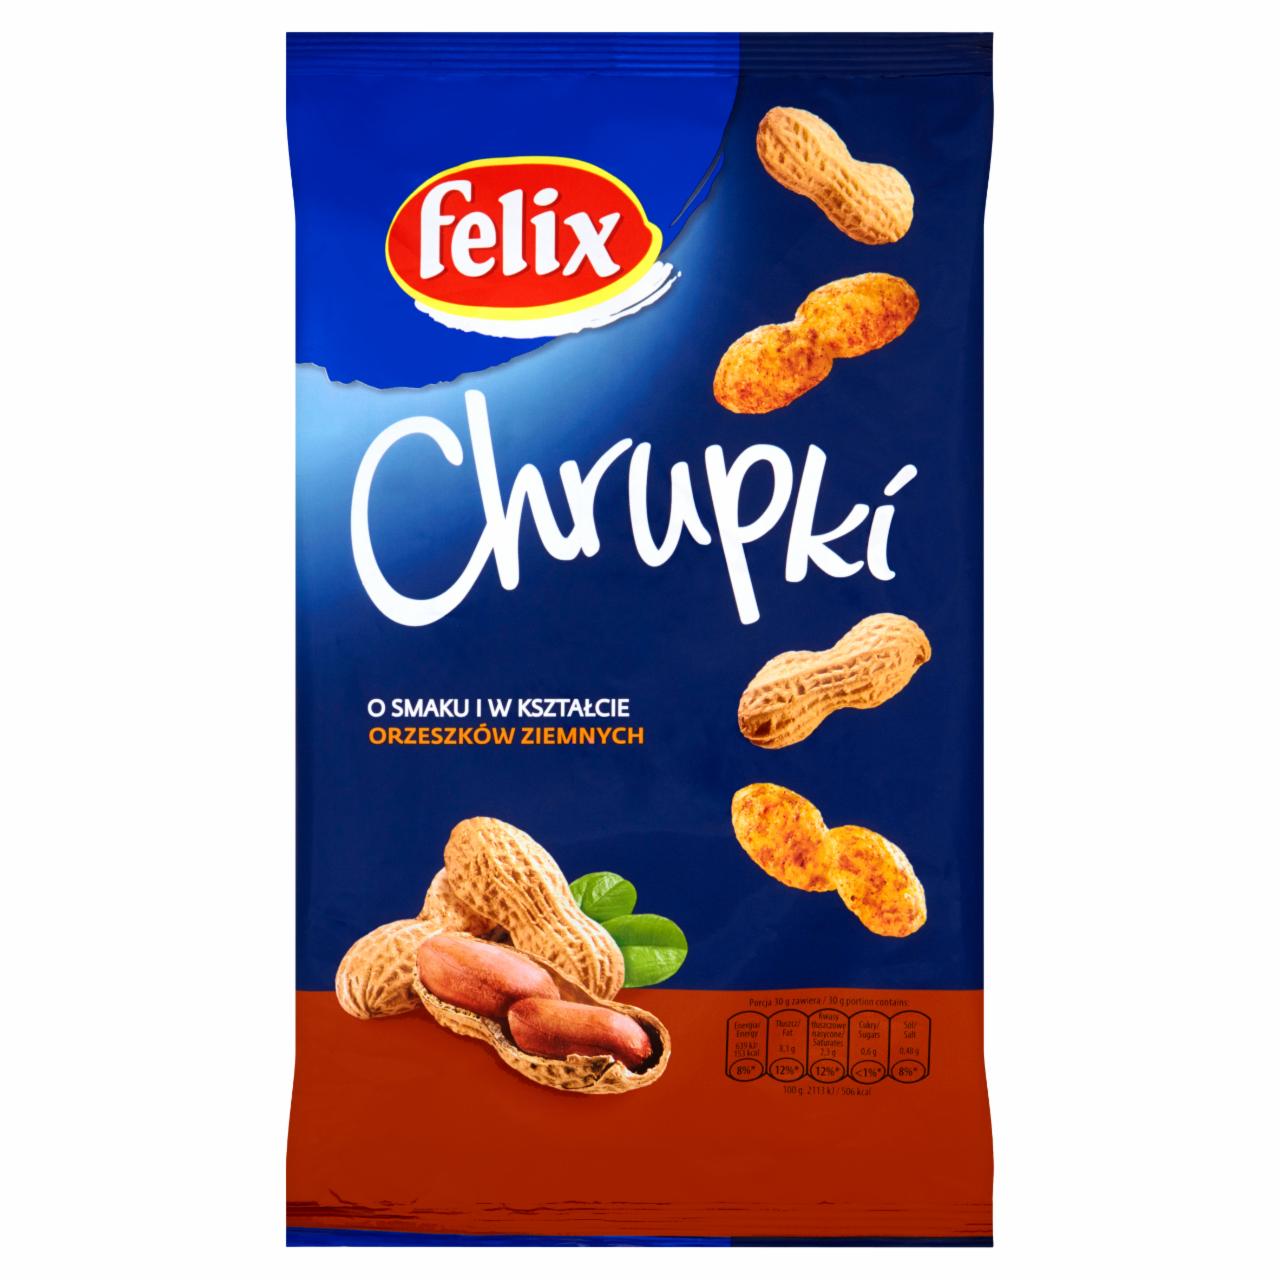 Zdjęcia - Felix Chrupki o smaku i w kształcie orzeszków ziemnych 100 g